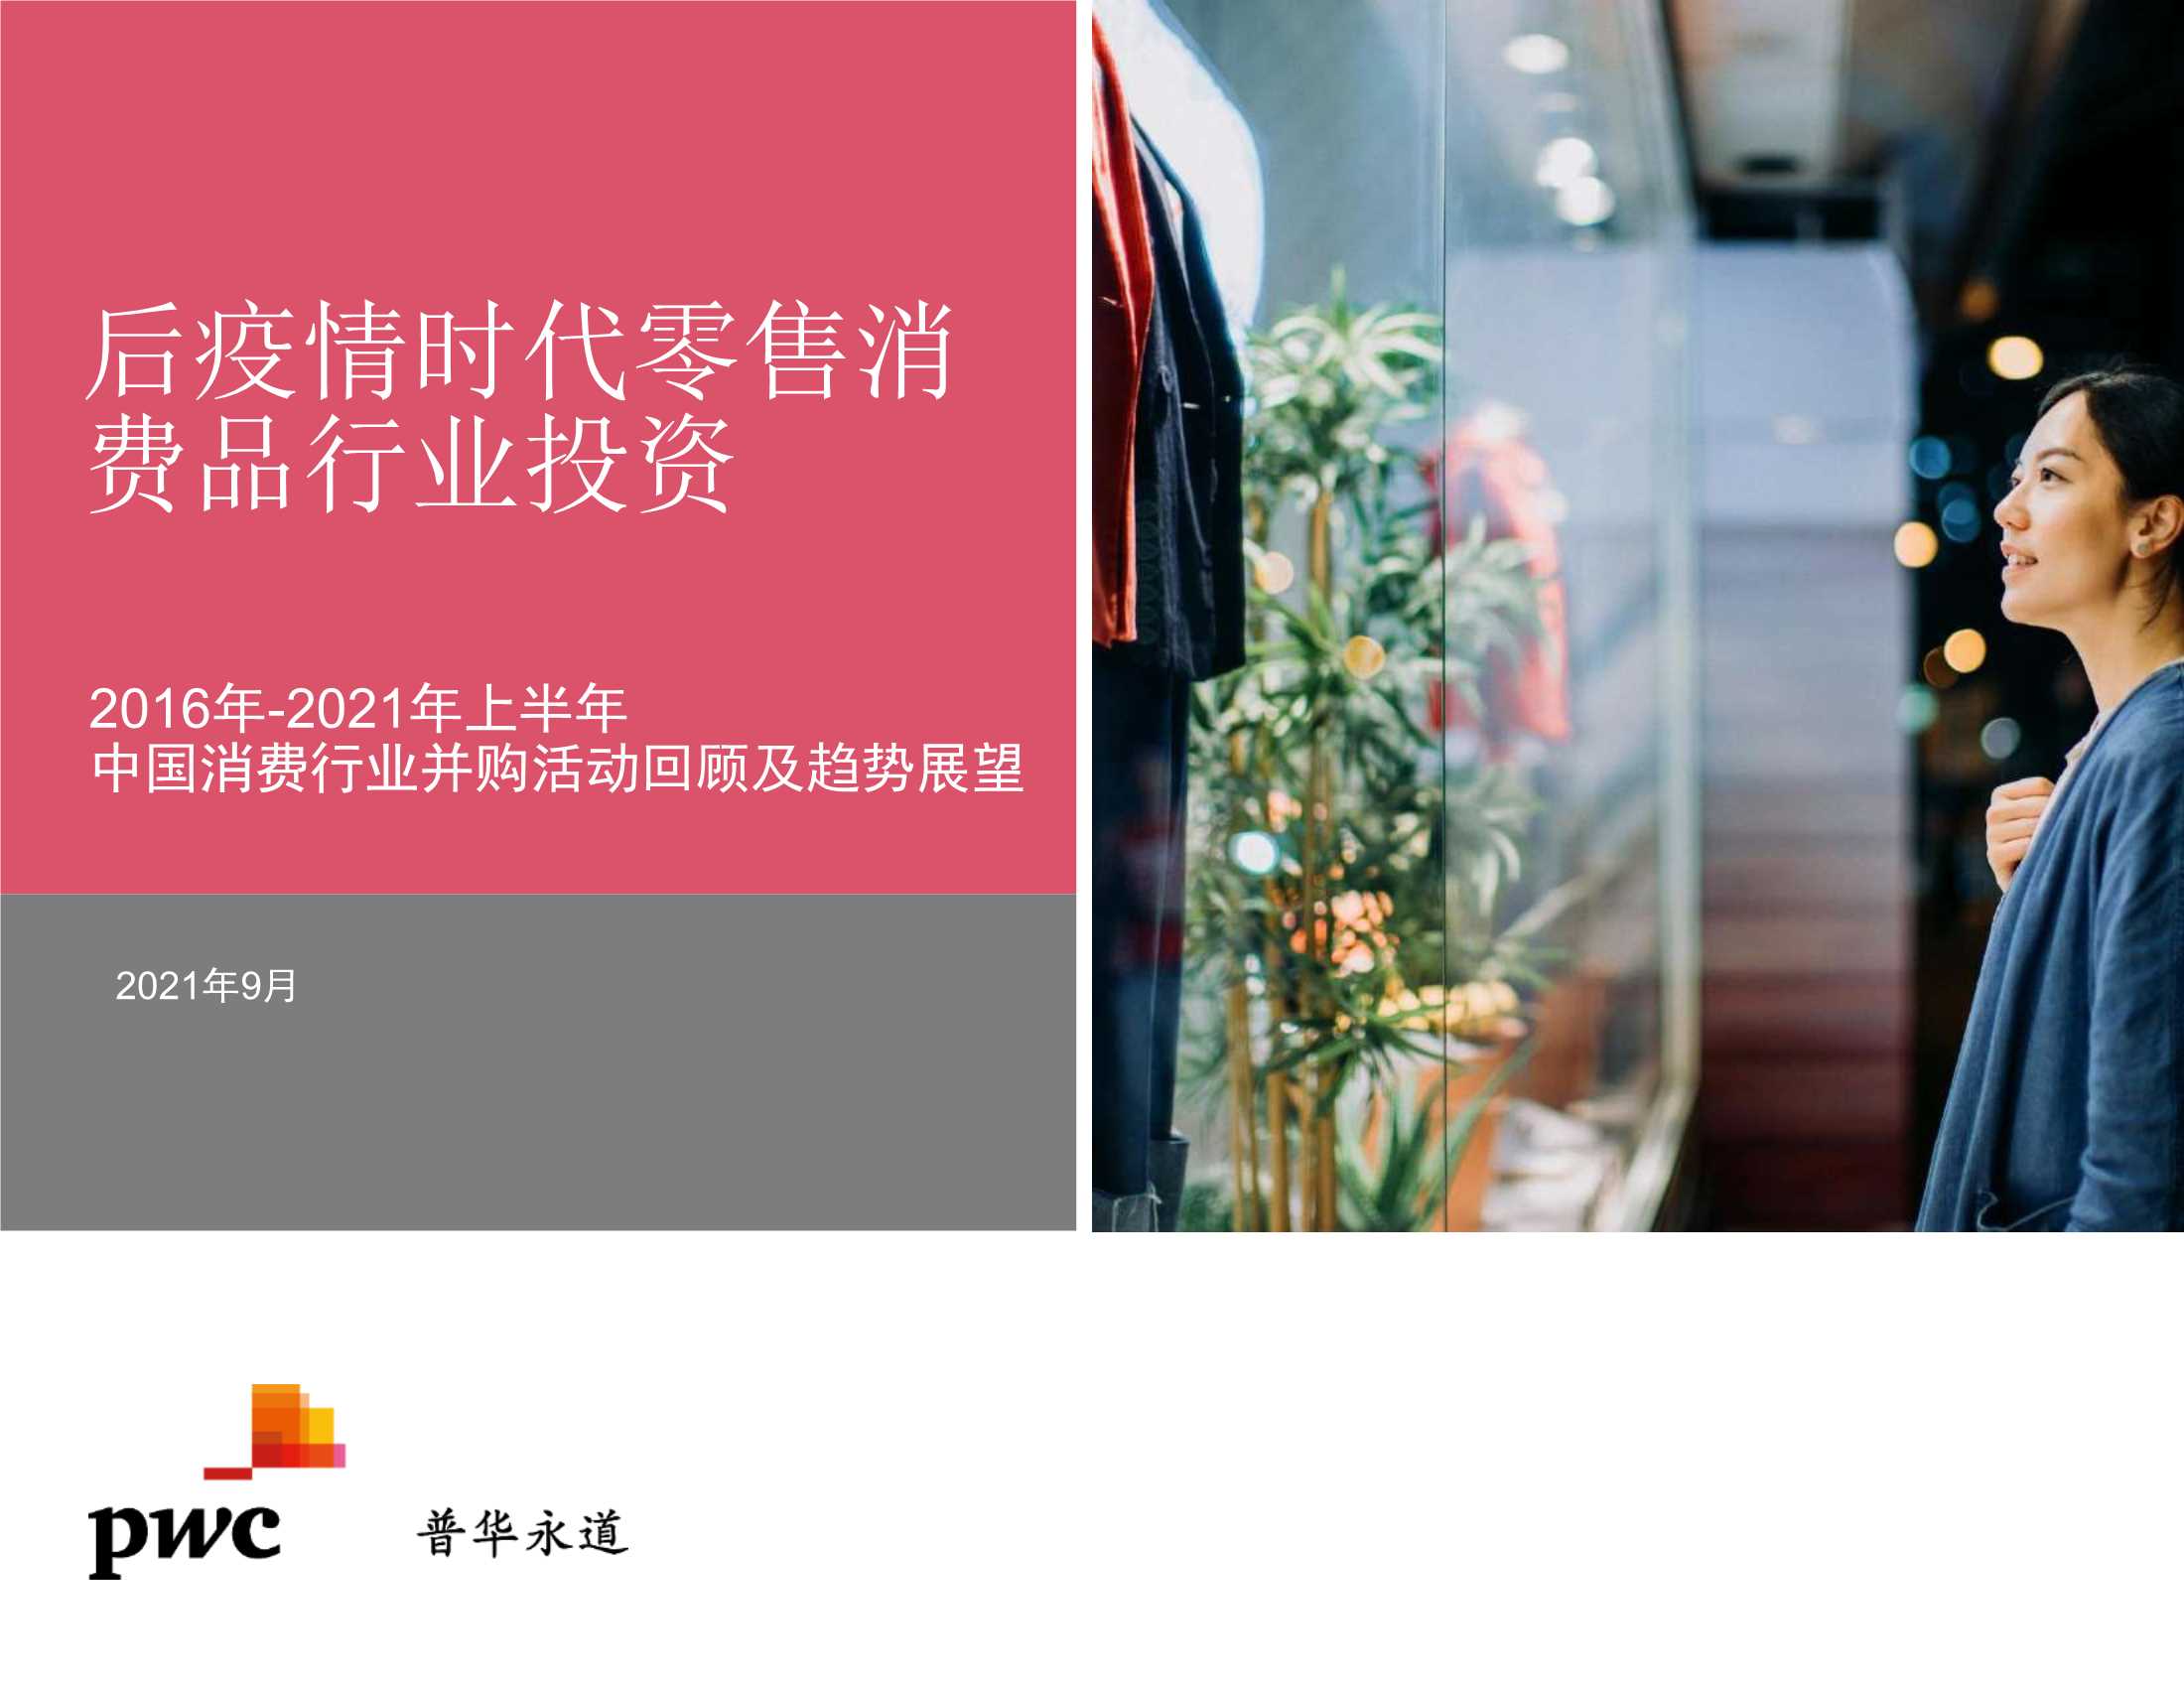 普华永道-2021年上半年中国行业并购市场回顾及前瞻 零售消费品行业-2021.09-24页